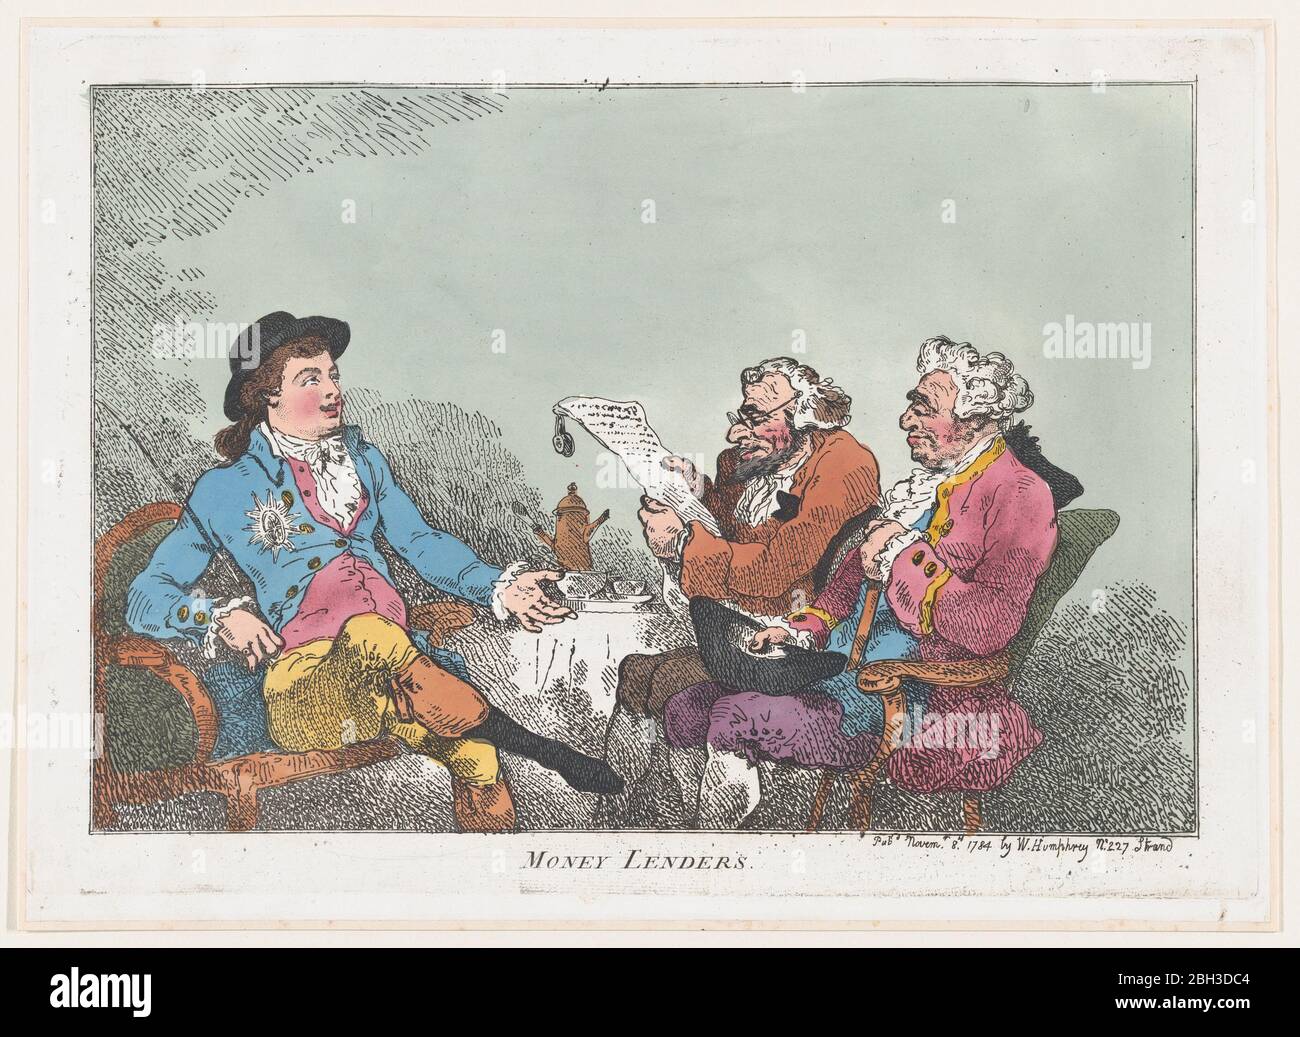 Money Lenders, November 8, 1784. Stock Photo